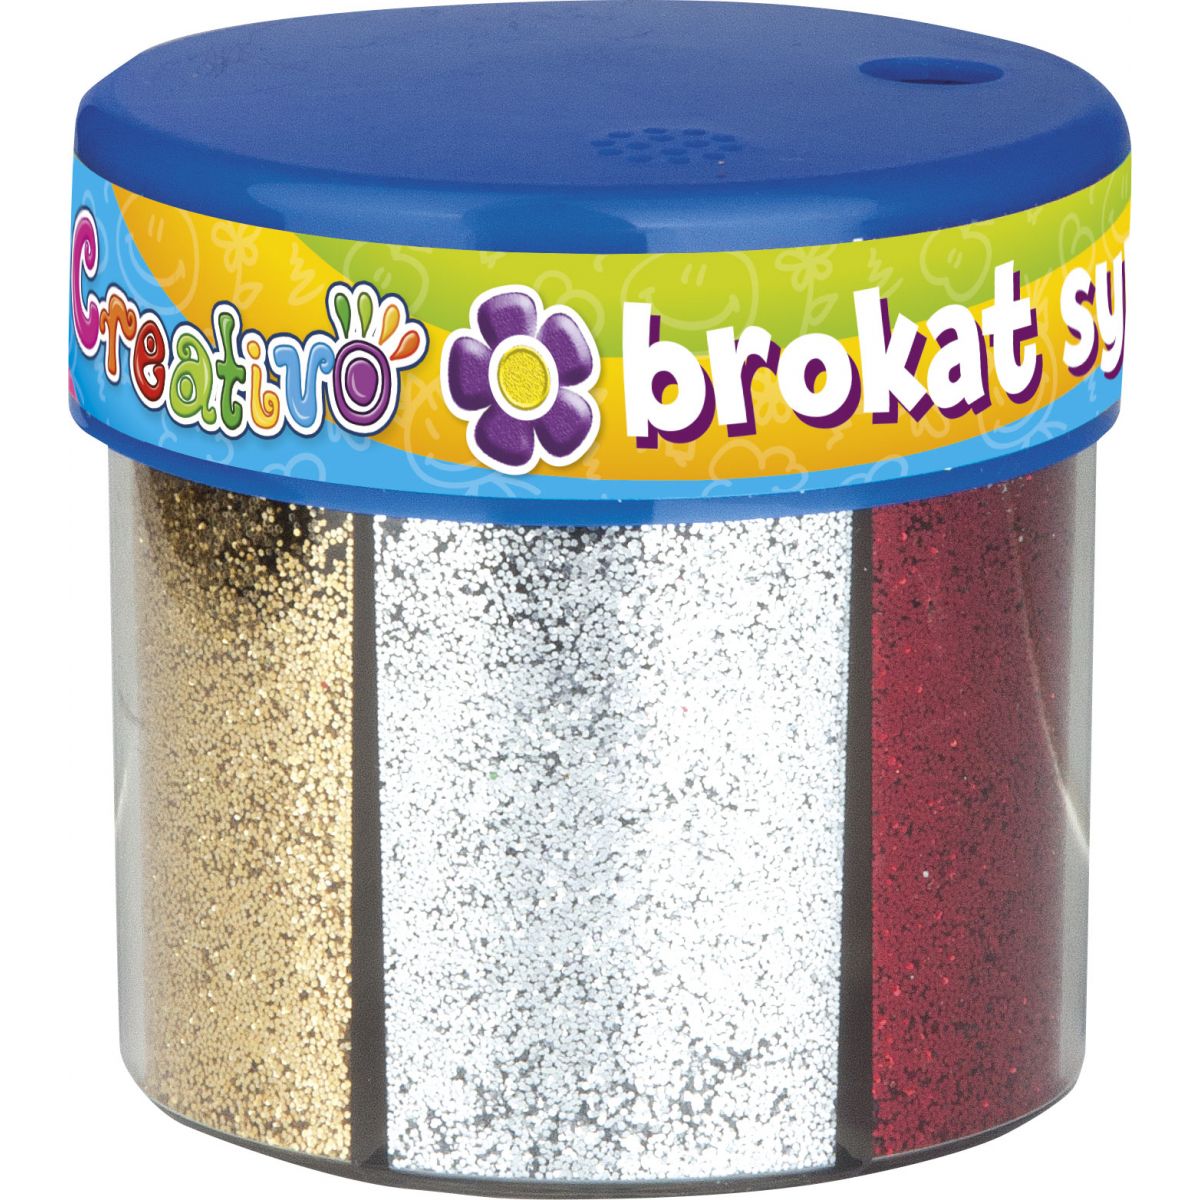 Brokat Astra Creativo Creativo kolor: mix 6 kolor. (335114001)